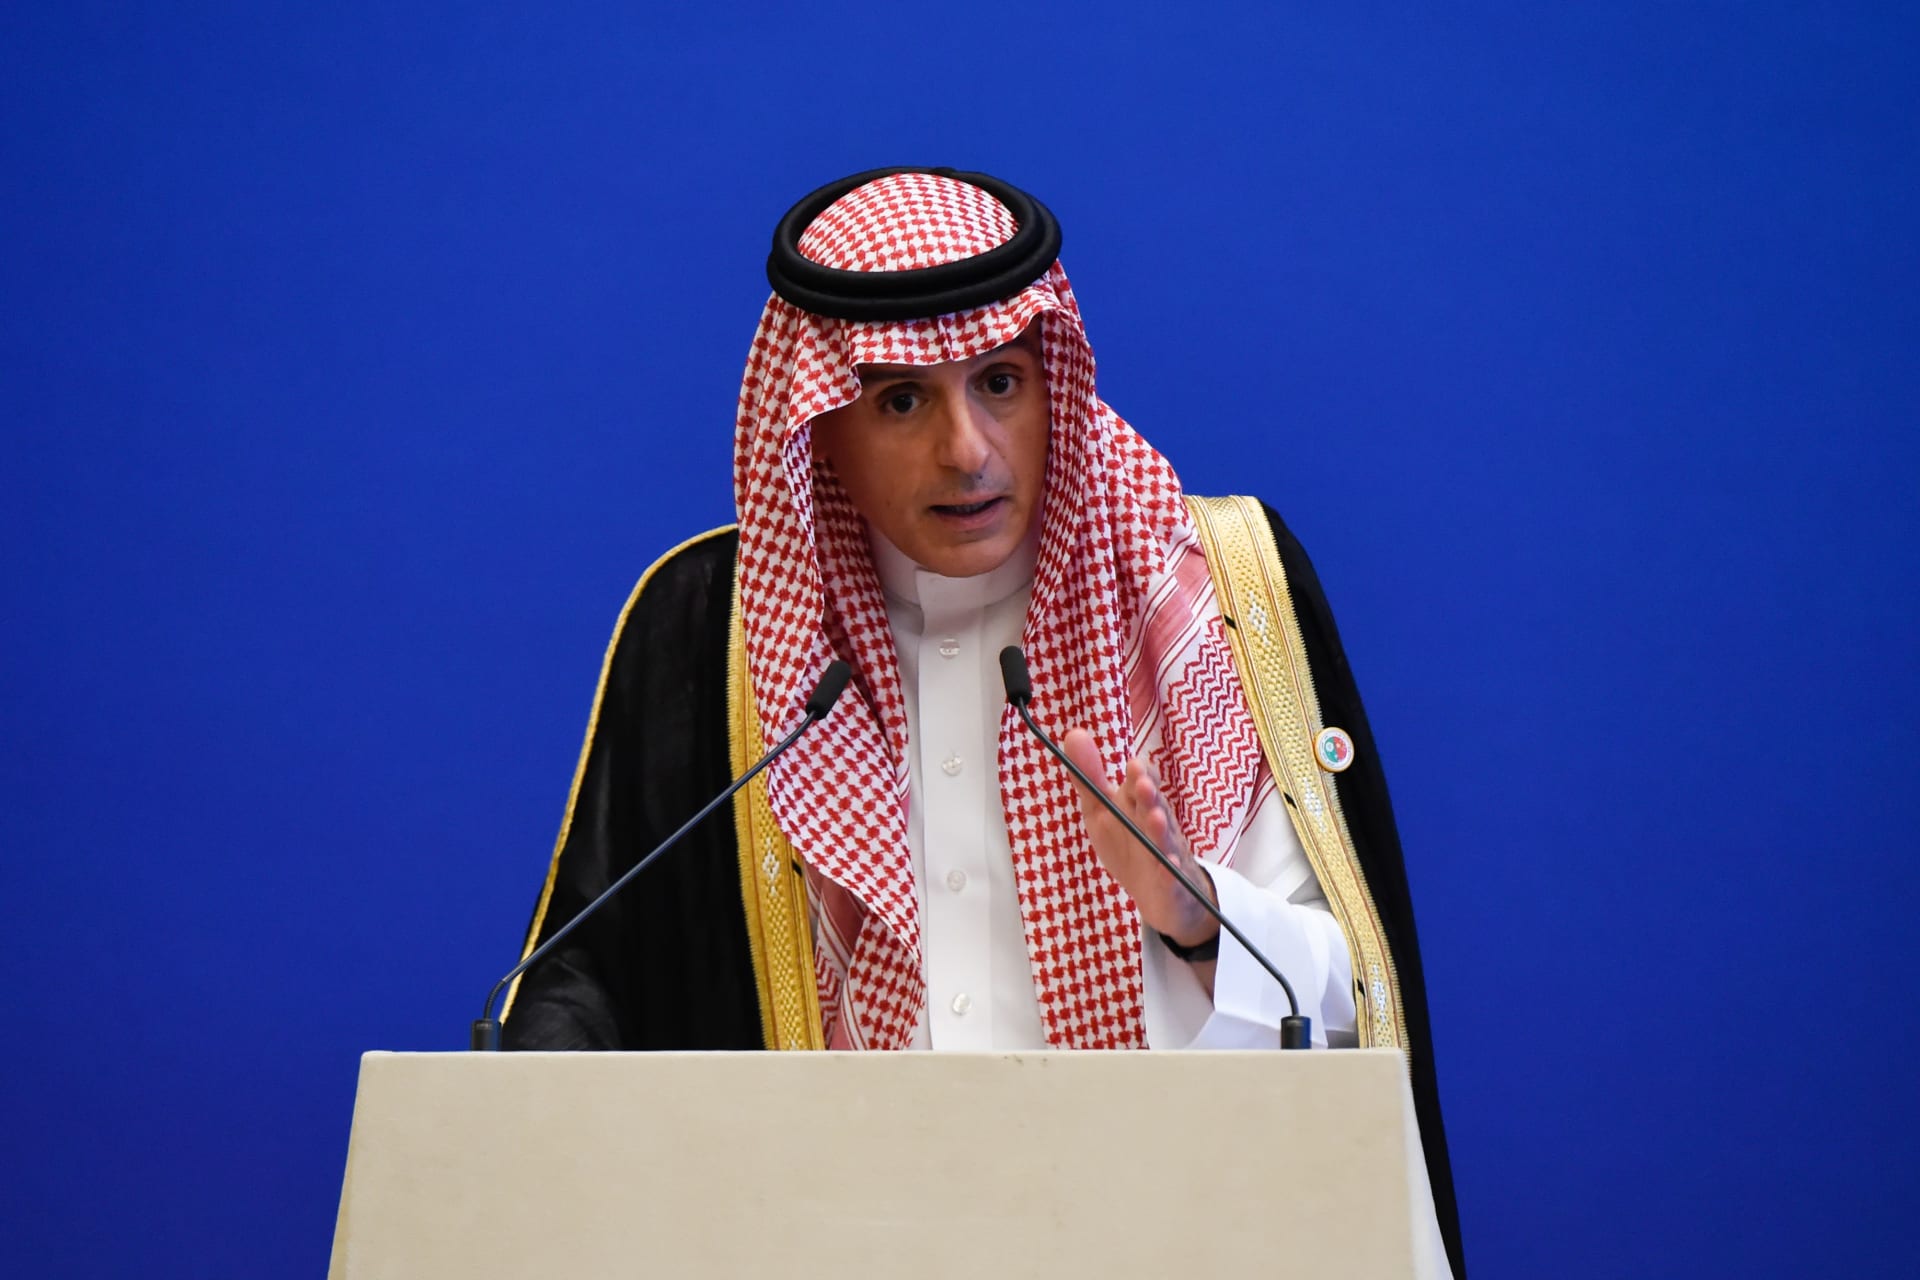 رد عادل الجبير و"سبب" أزمة السعودية وكندا.. تفاعل على إعلان عودة العلاقات بين السعودية وكندا